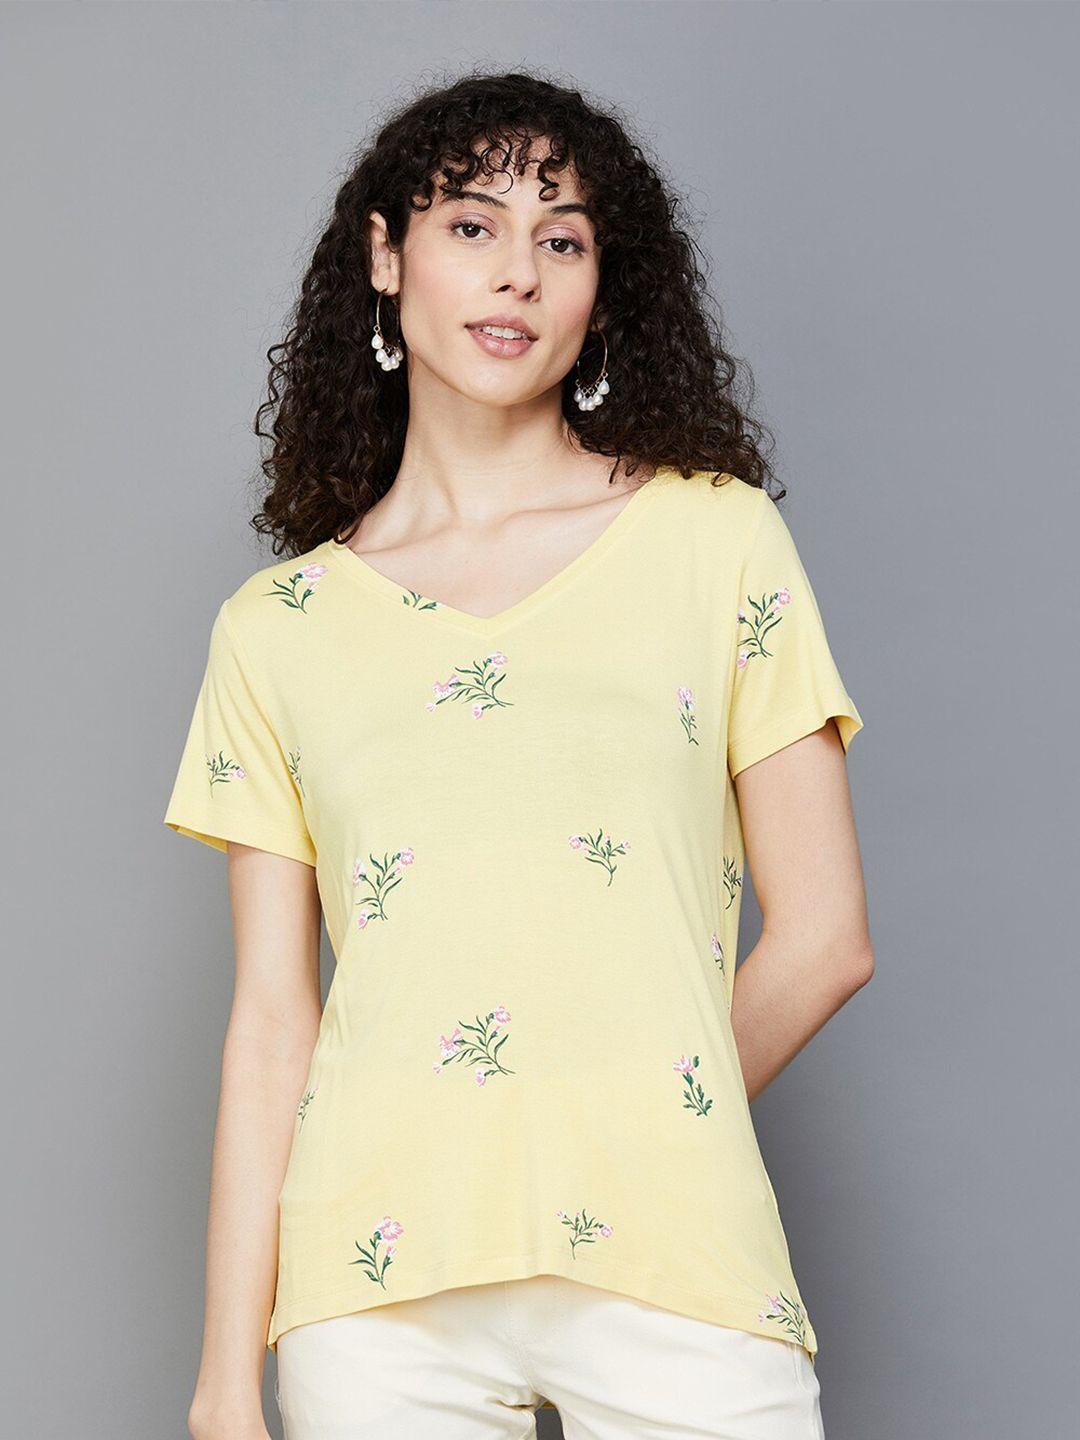 colour me by melange floral printed v-neck t-shirt